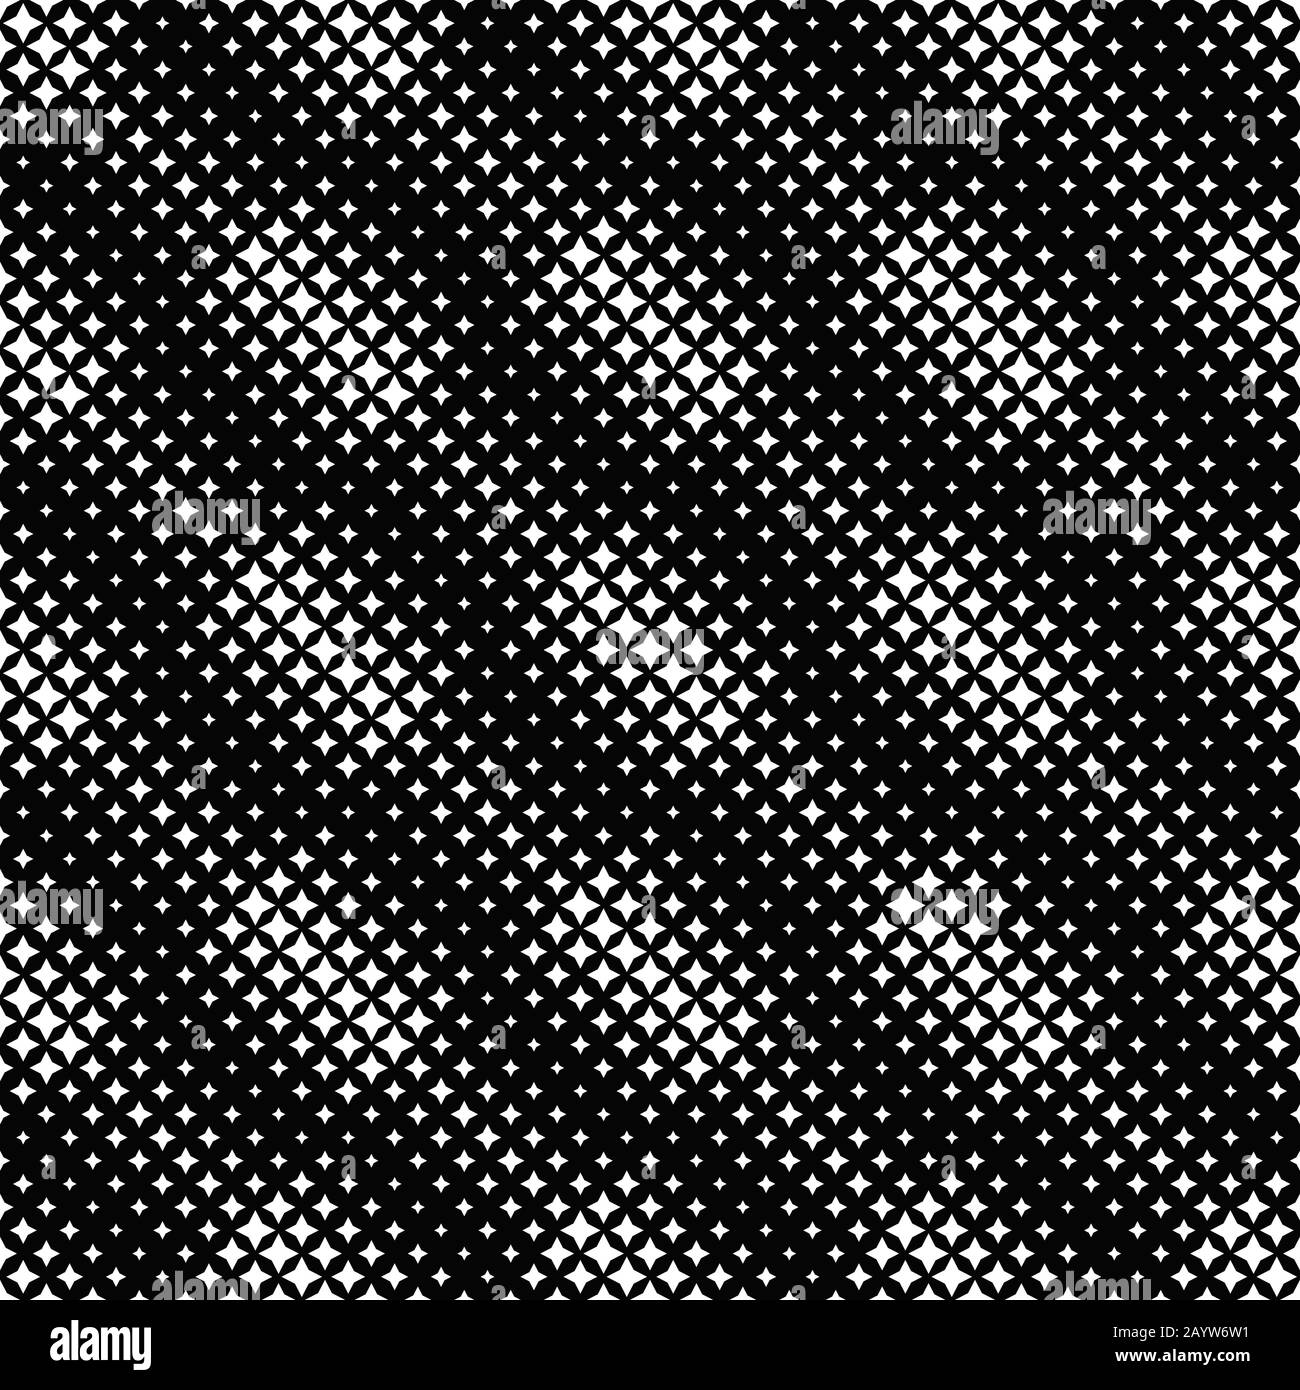 Nahtloser Hintergrund mit schwarzem und weißem Sternmuster - abstraktes geometrisches Vektordesign Stock Vektor